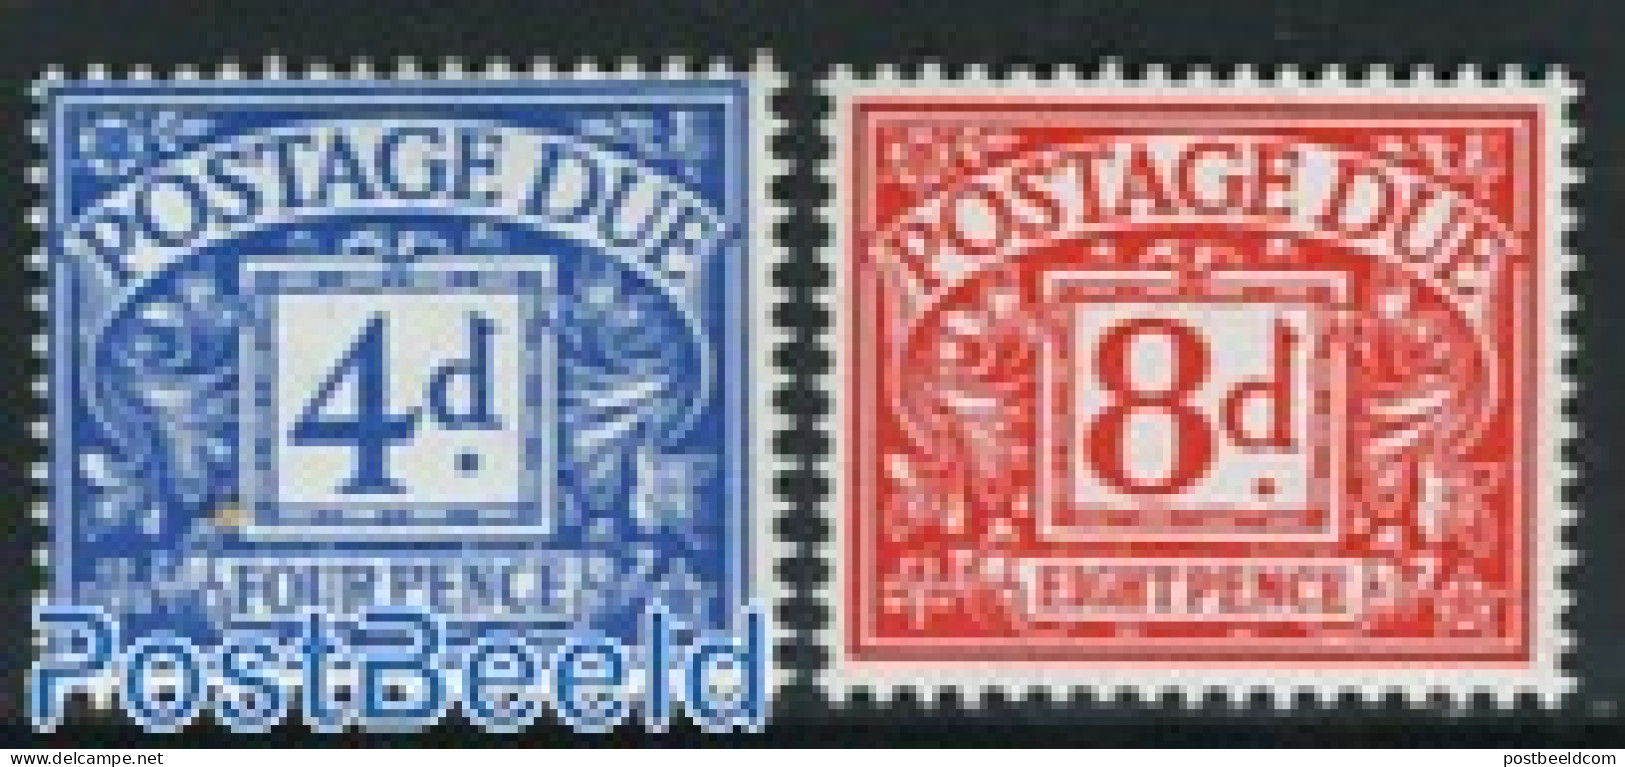 Great Britain 1968 Postage Due 2v, Mint NH - Non Classés